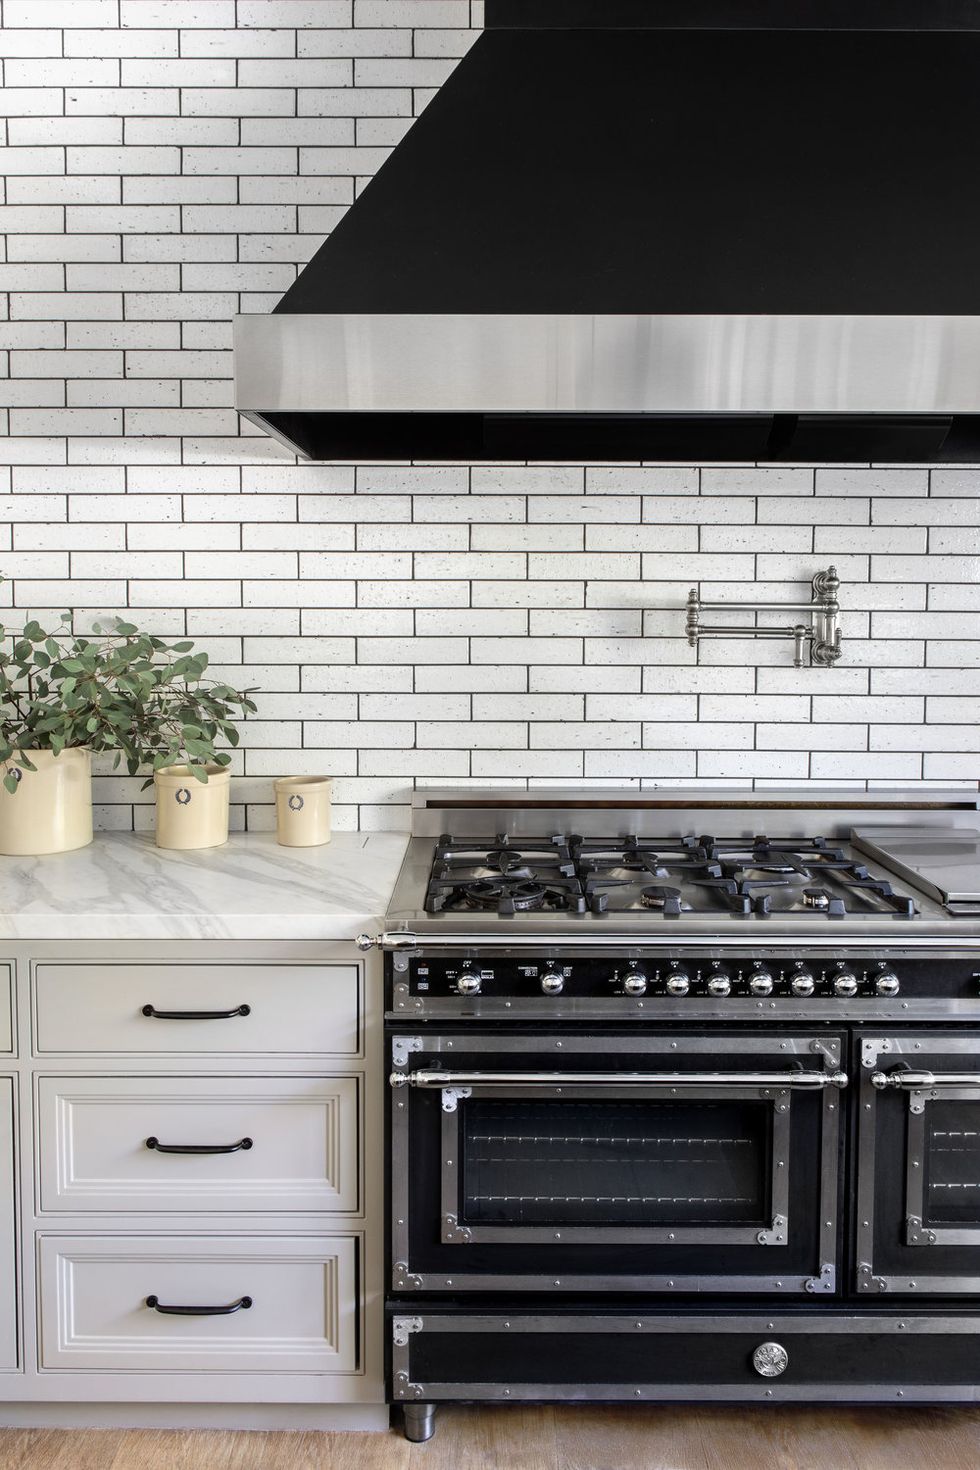 17 Fresh Subway Tile Kitchen Ideas - Stylish Backsplash Ideas